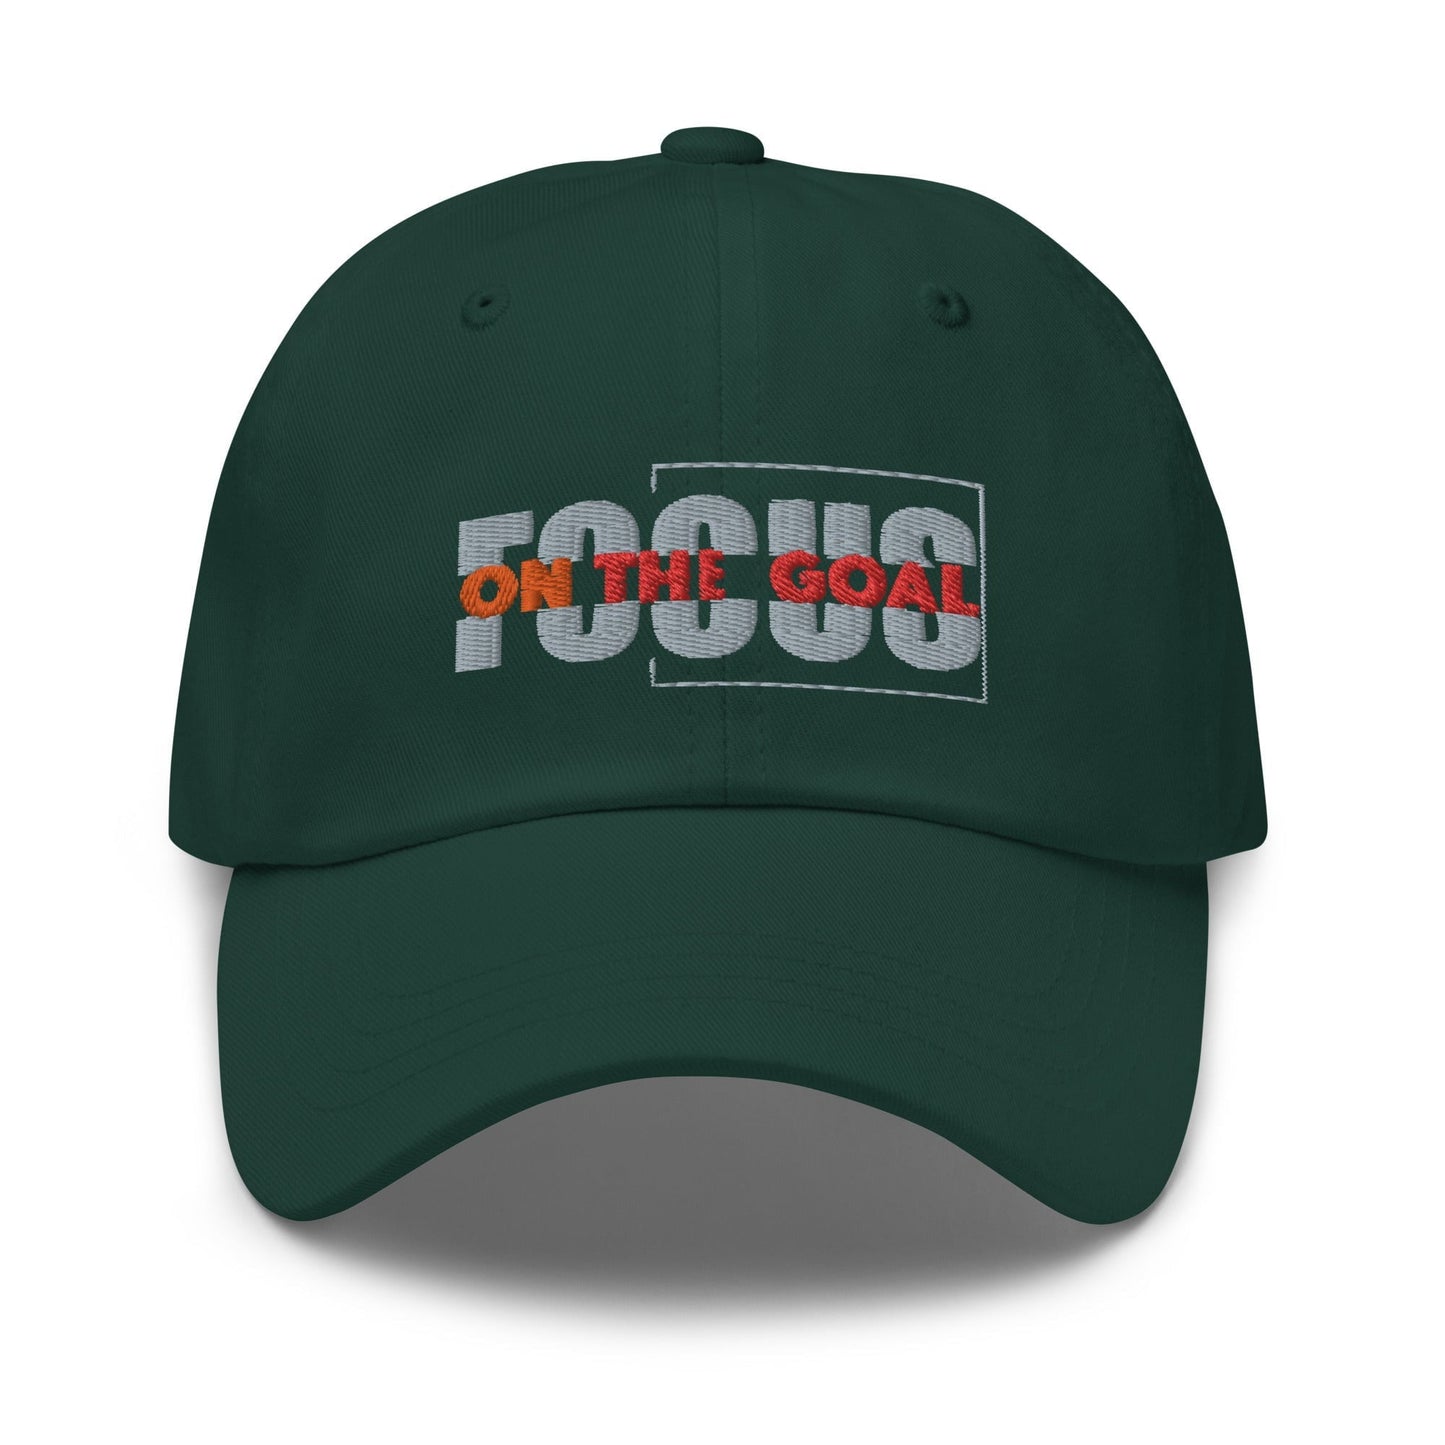 Focus dad hat